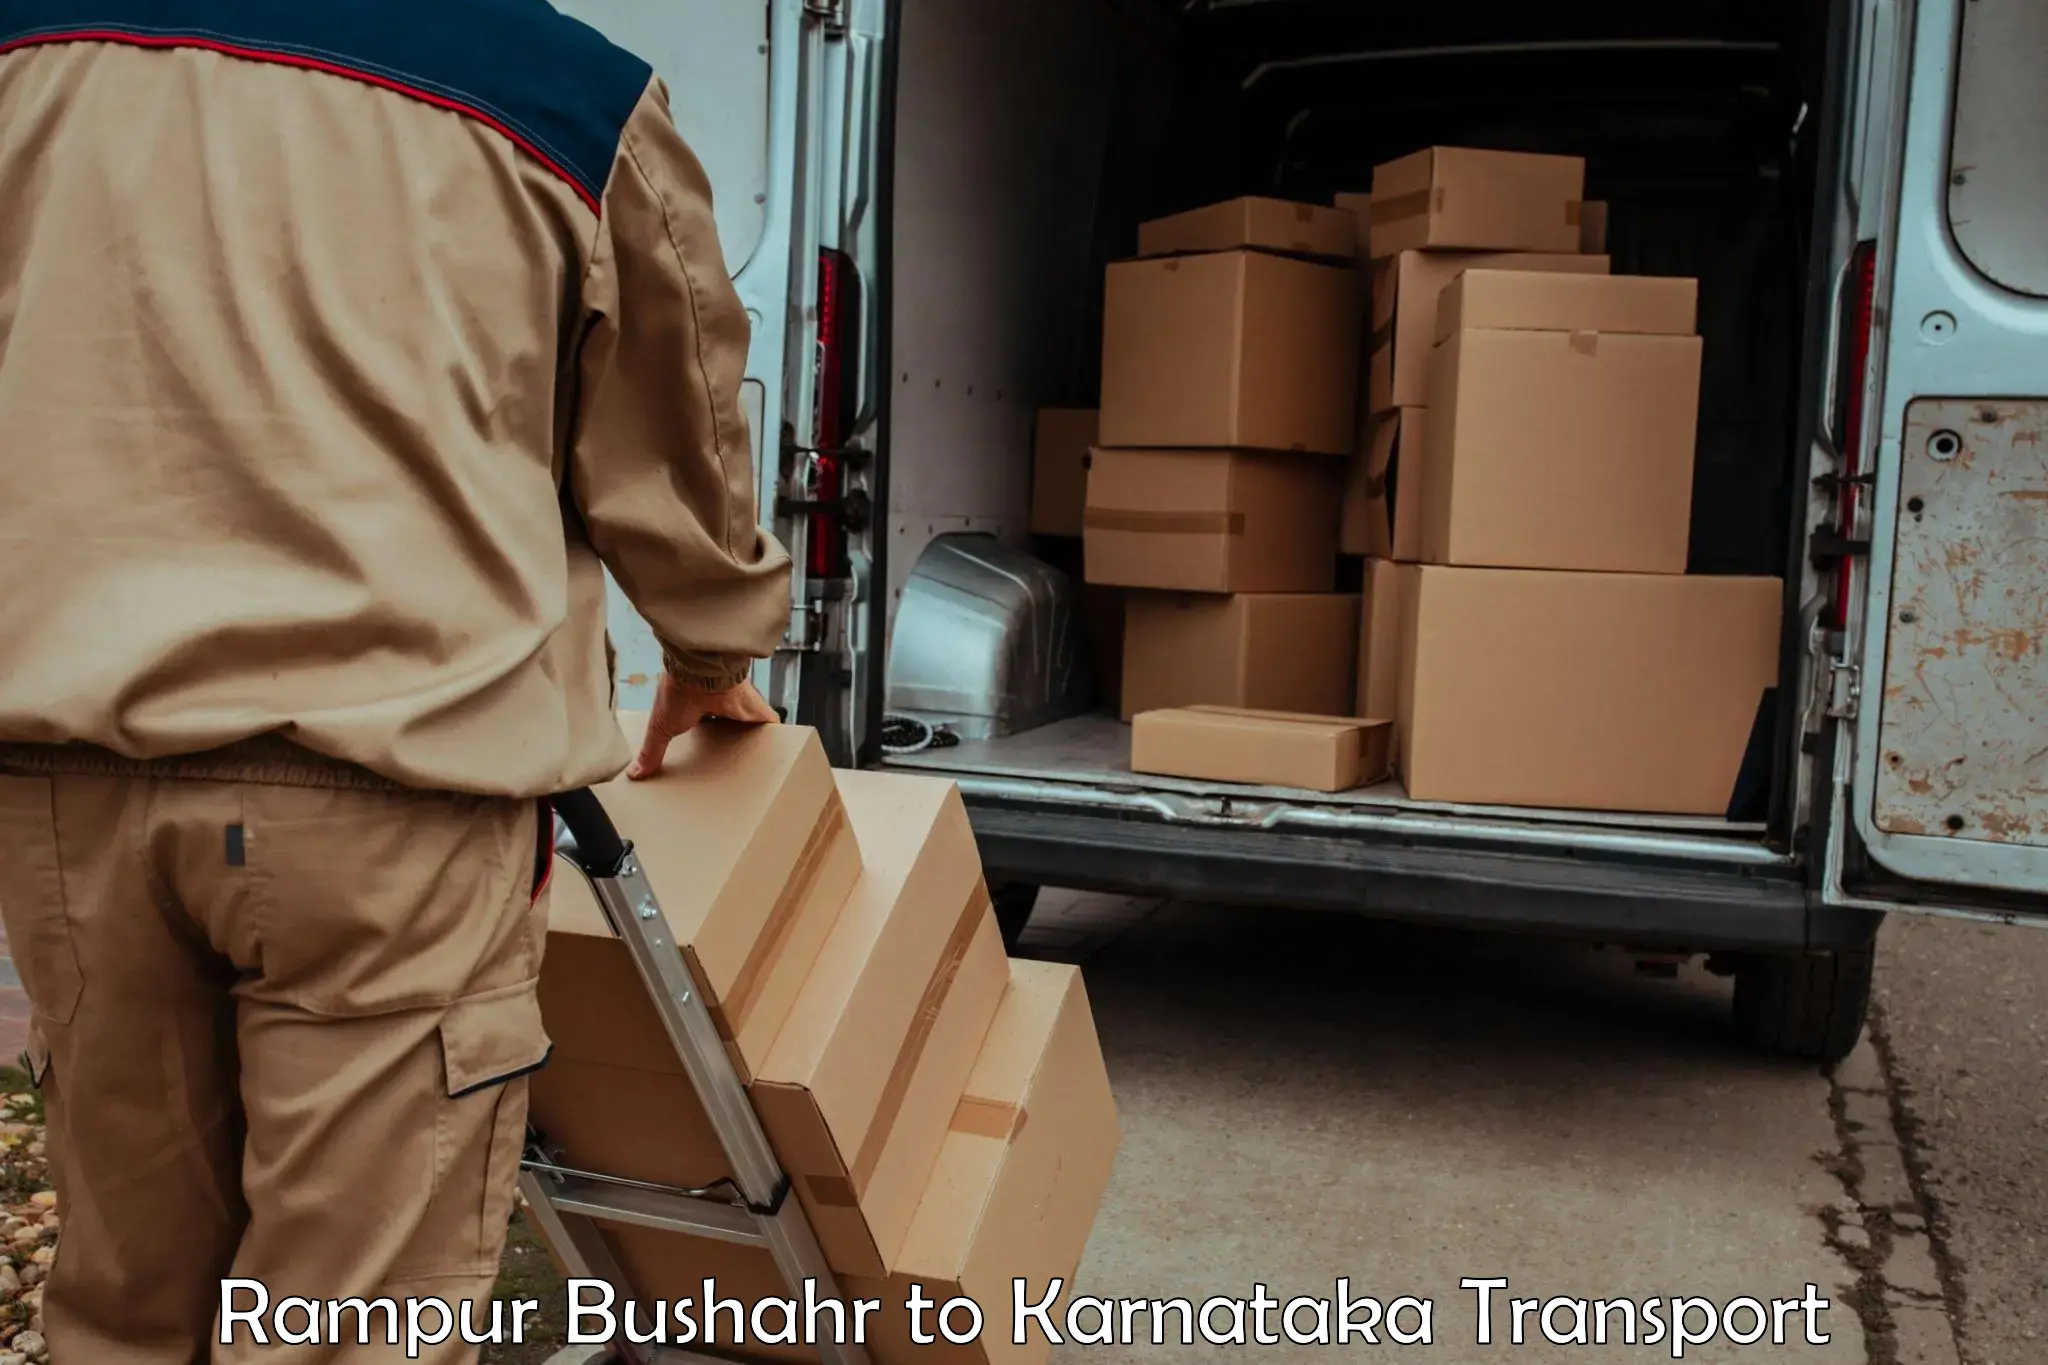 Road transport online services Rampur Bushahr to Karnataka